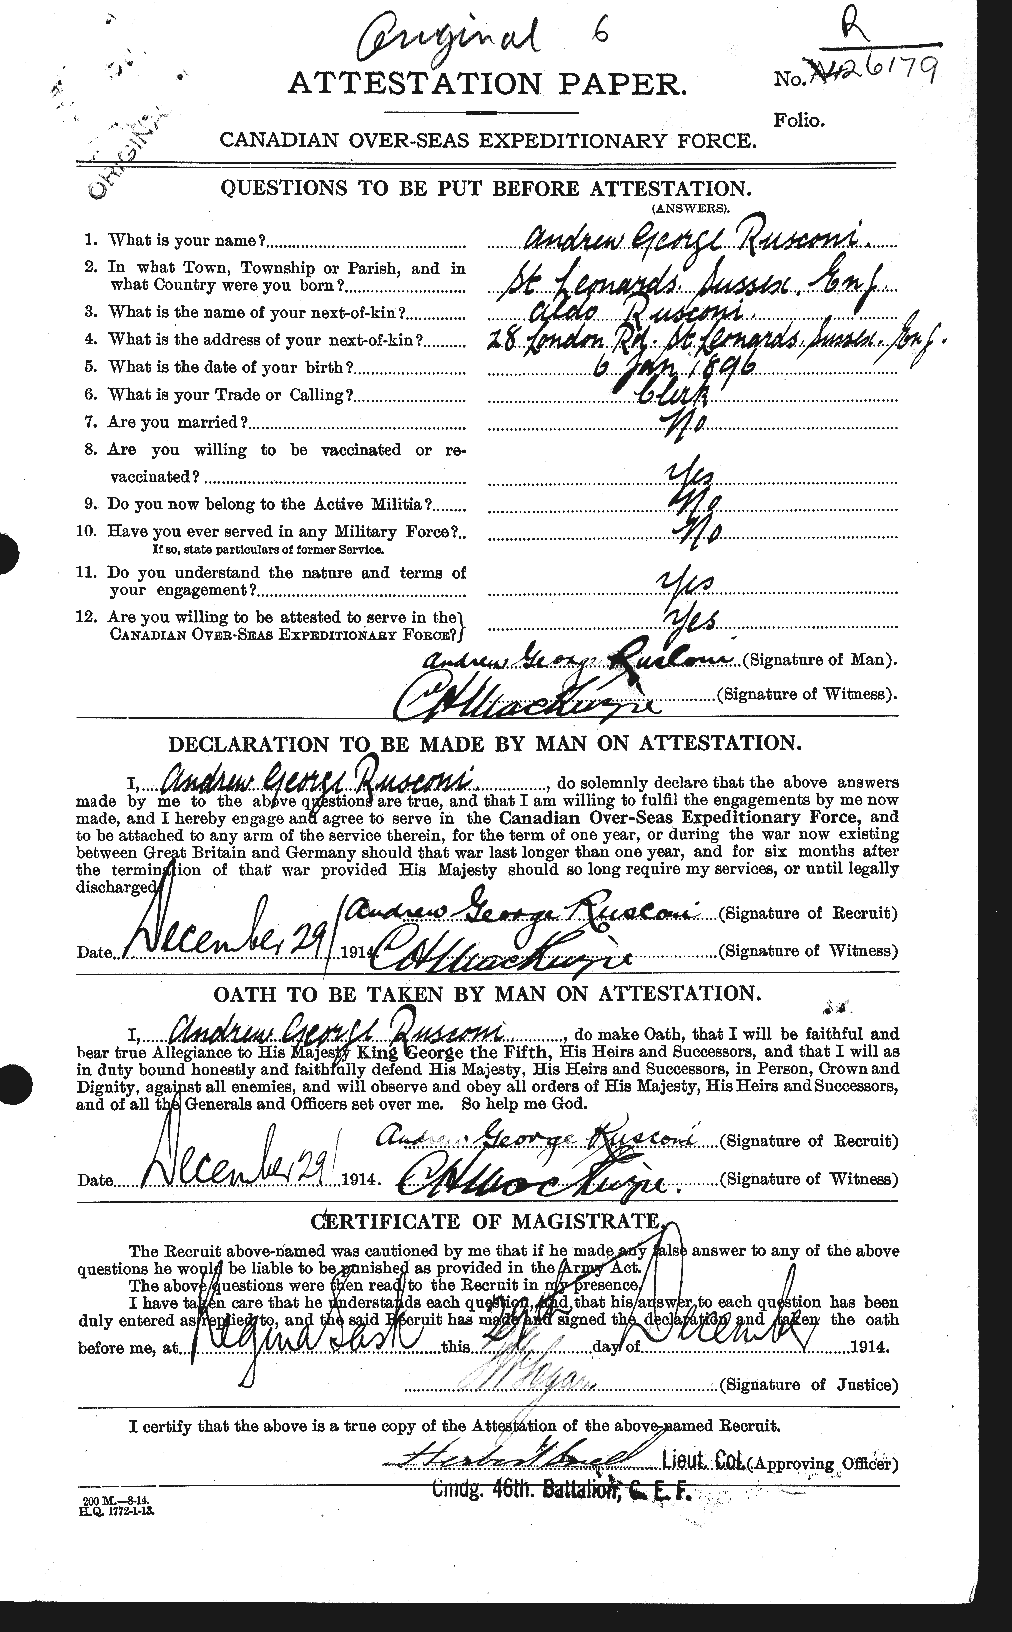 Dossiers du Personnel de la Première Guerre mondiale - CEC 618588a